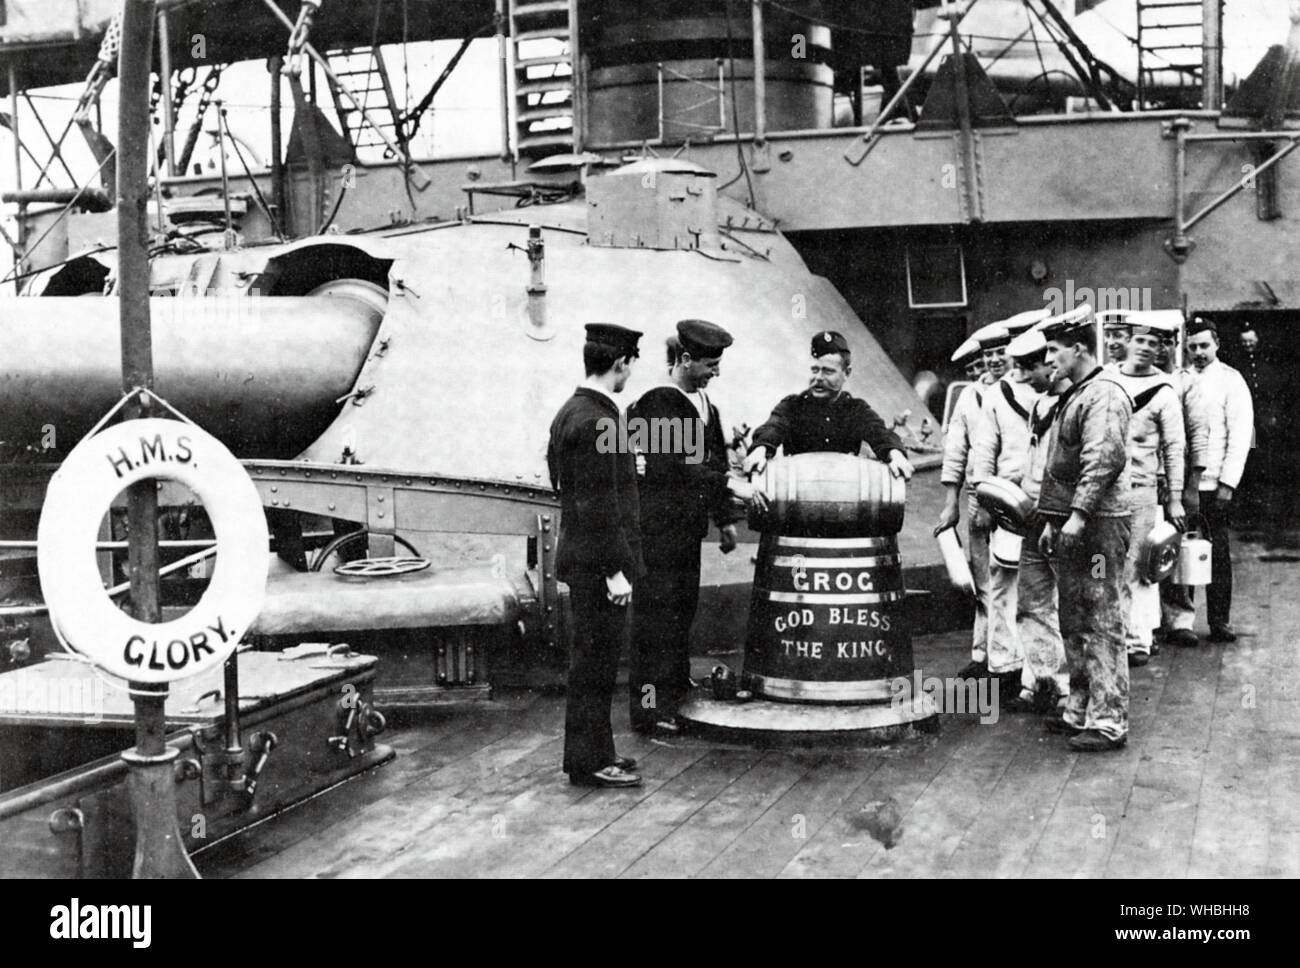 Au début du xxe siècle une photographie de la question de grog à bord du HMS GLORY Banque D'Images